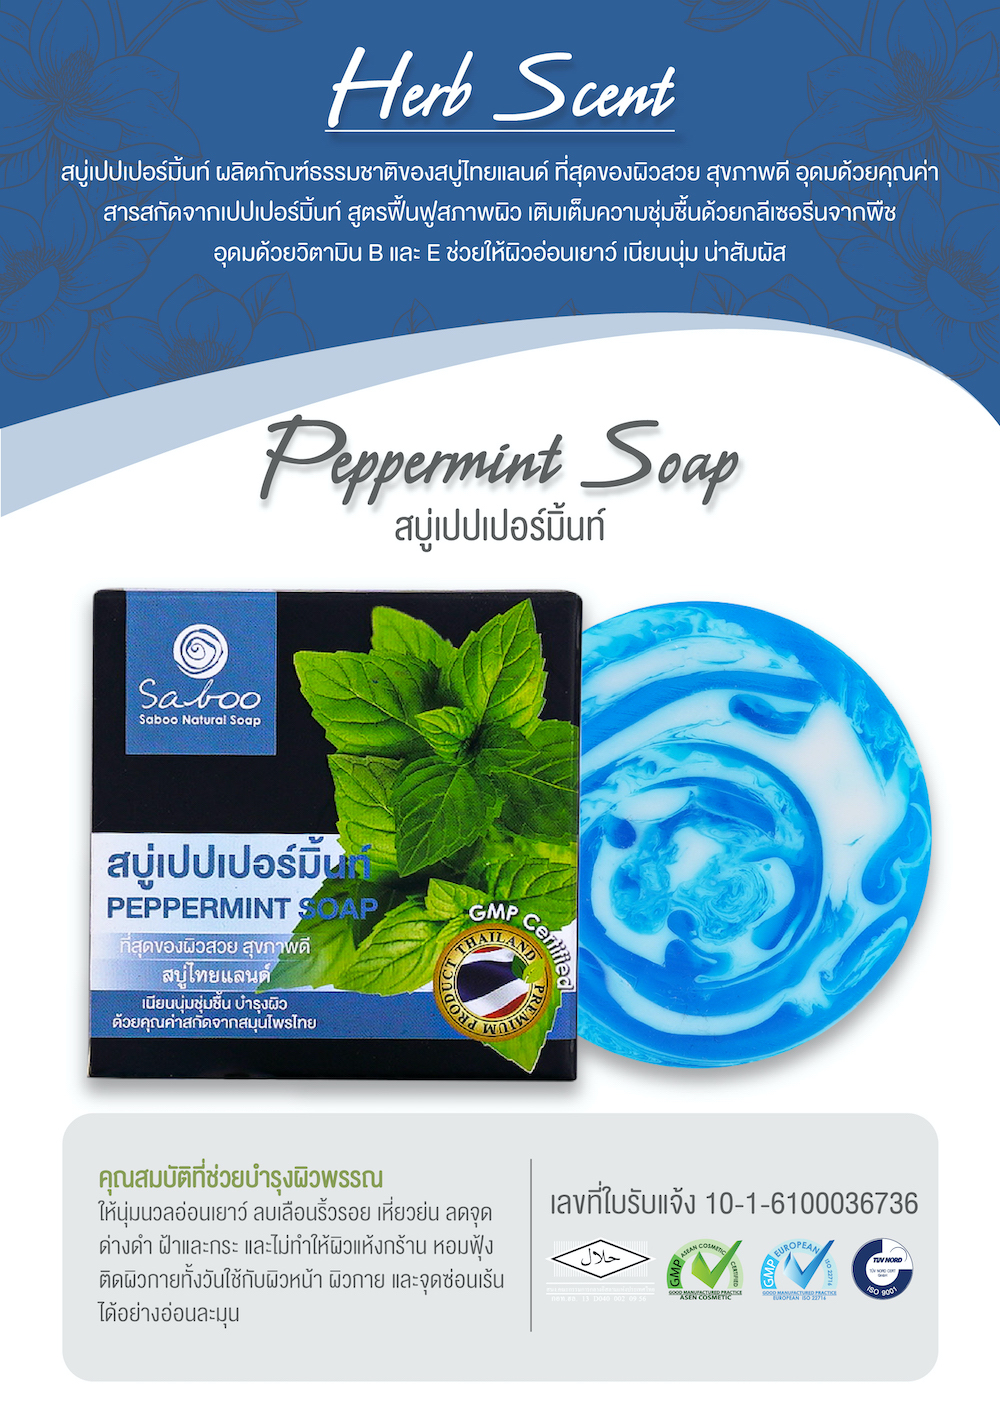 Saboo Thailand,Saboo Natural Soap Black Box ,สบู่ไทยแลนด์,สบู่,สบู่ล้างหน้าใส,สบู่ทำความสะอาดหน้า